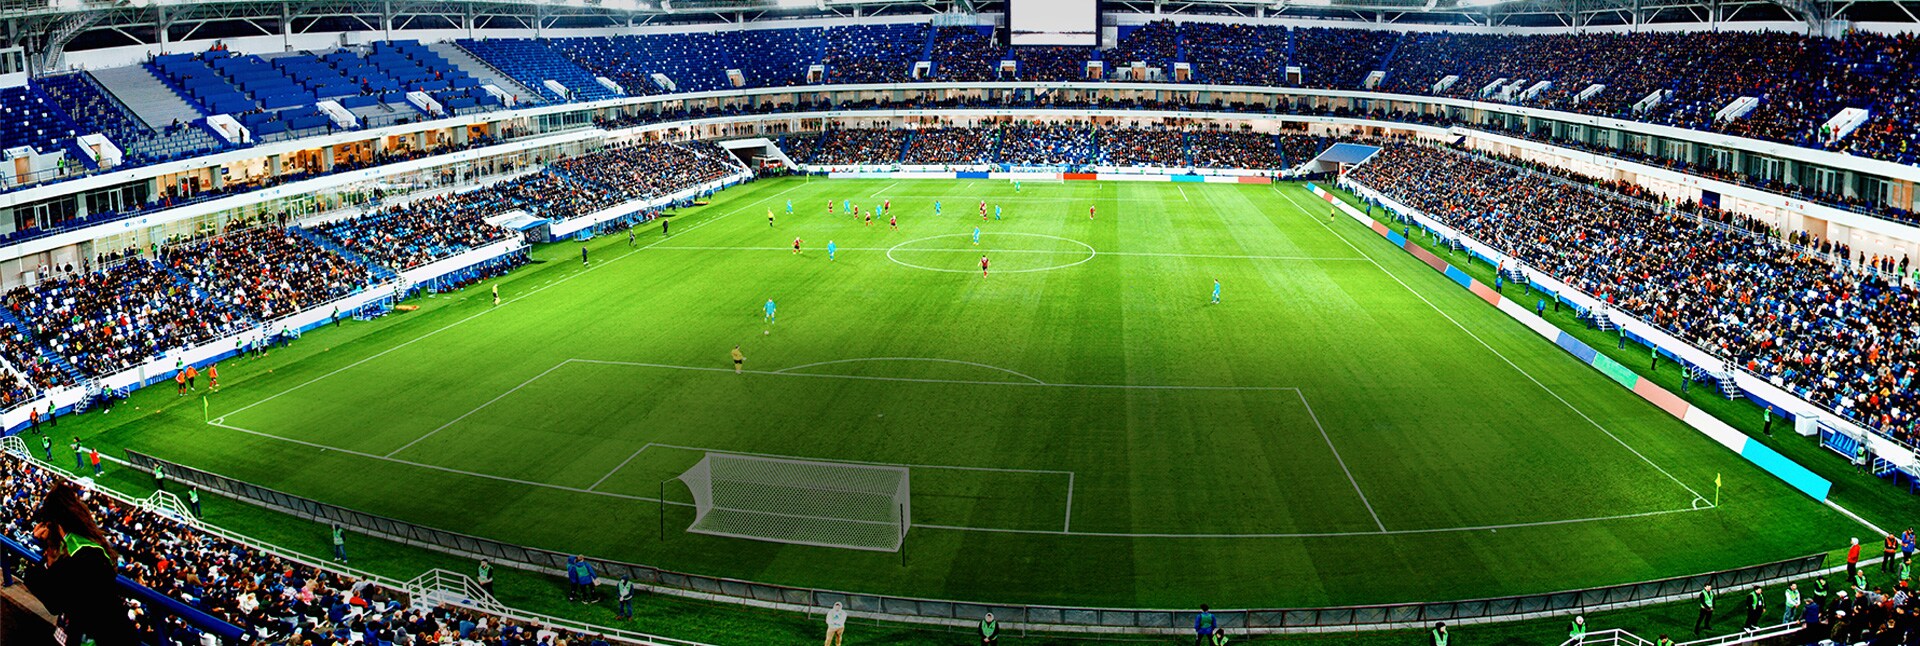 Vue aérienne d’un stade avec le bouton de lecture de la vidéo.